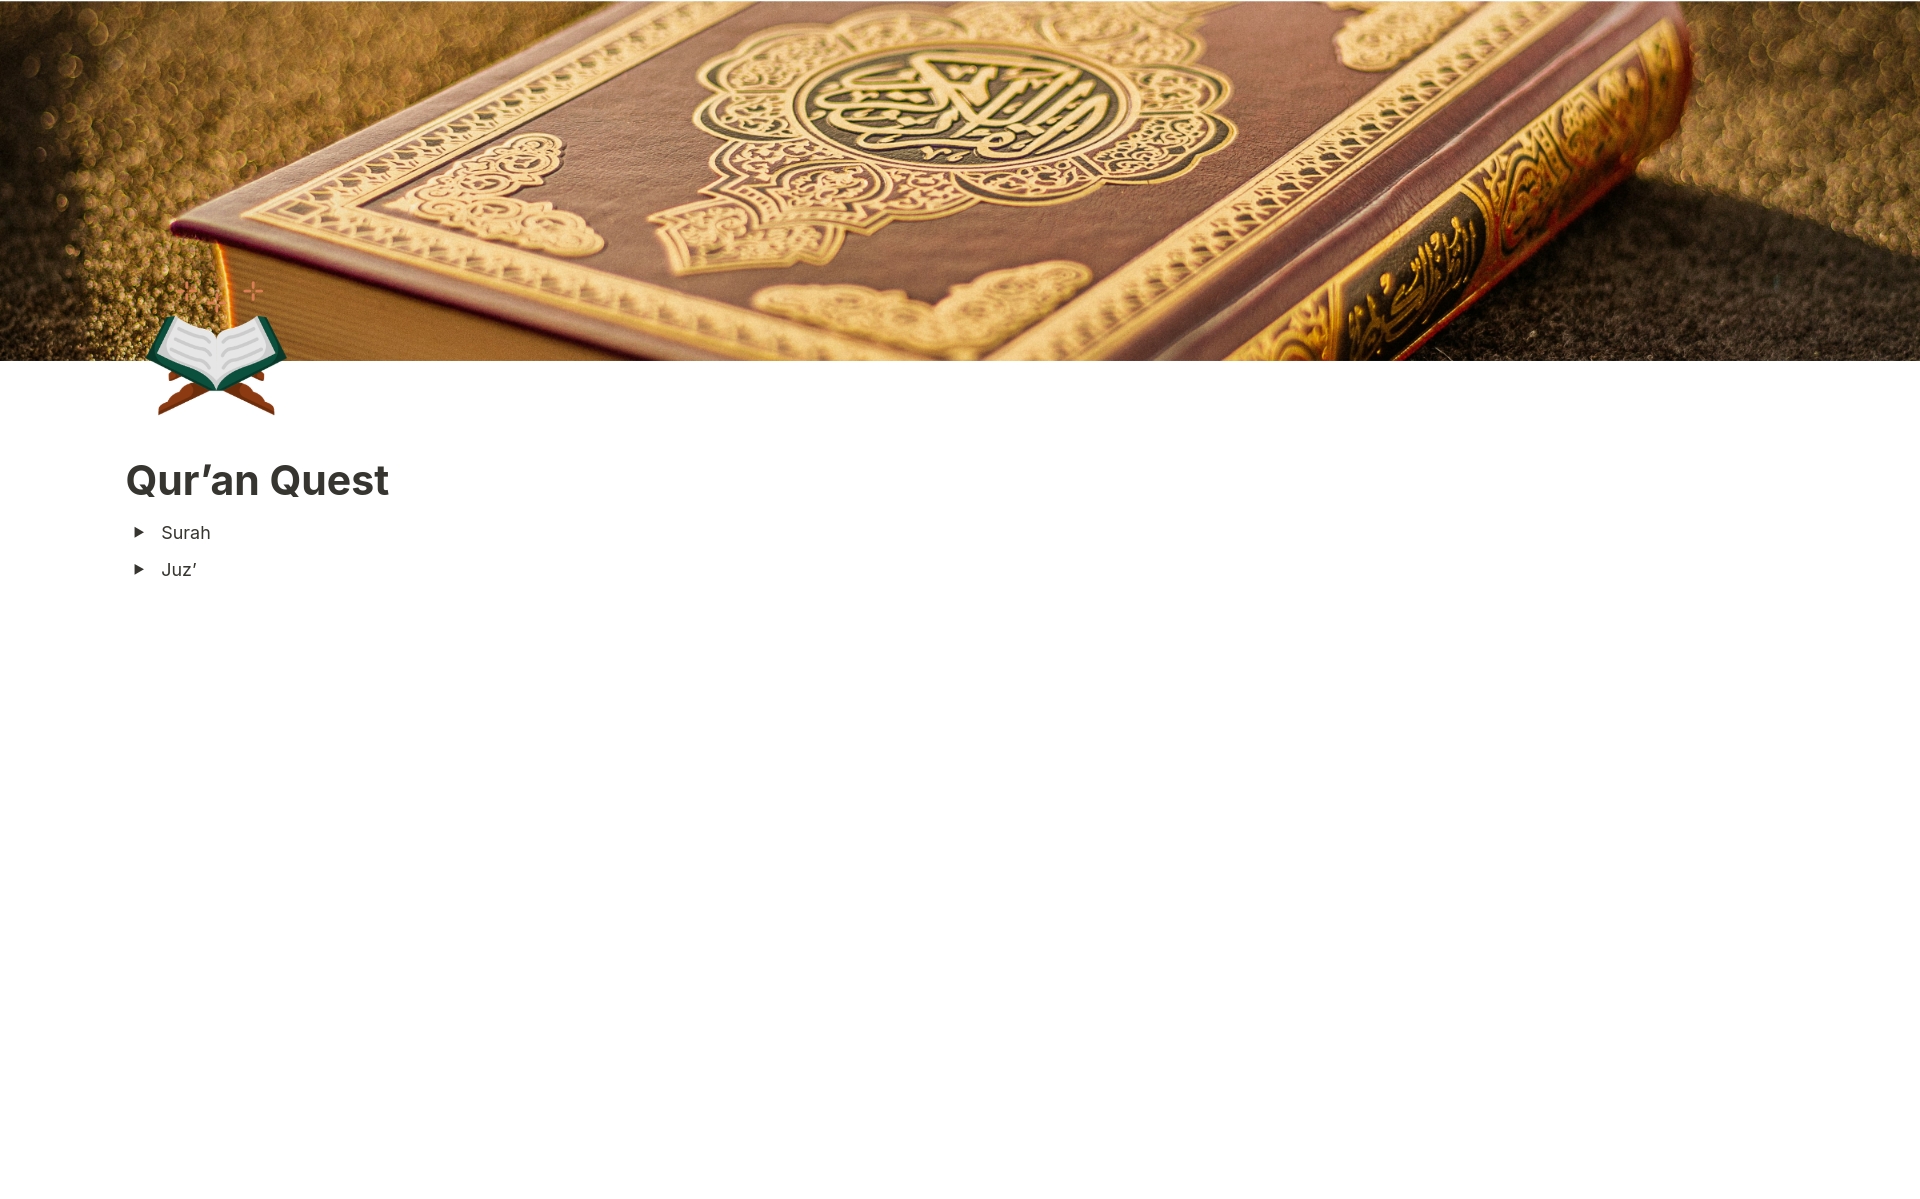 Qur’an Quest님의 템플릿 미리보기